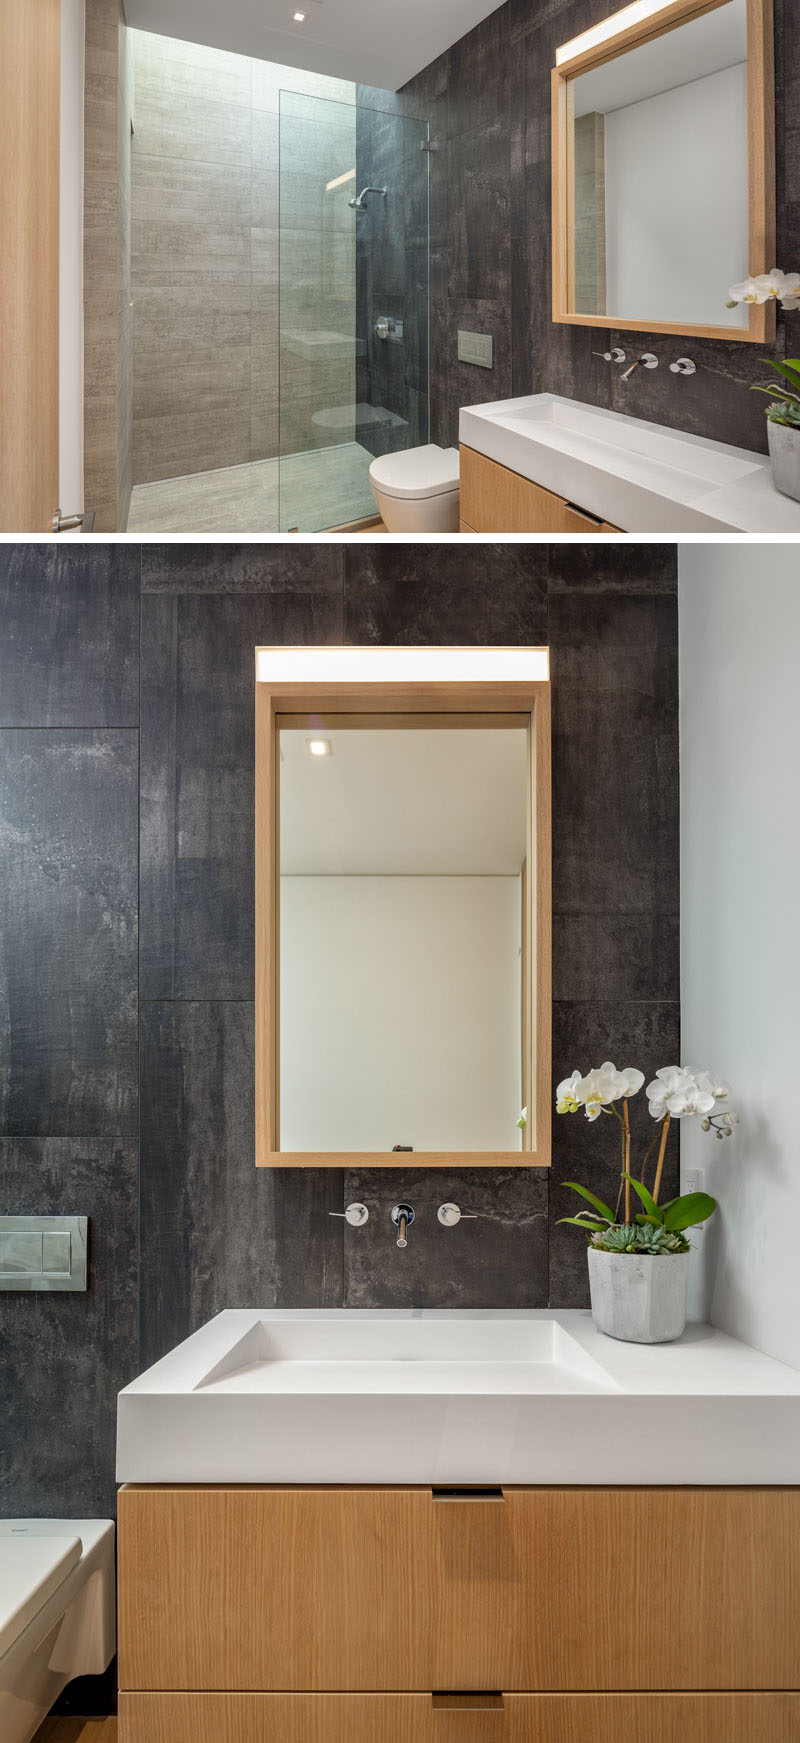 Идеи для ванных комнат - В этой современной ванной комнате потолочное окно добавляет естественный свет в душ, а деревянный туалетный столик с подходящим зеркалом добавляет естественности. #BathroomIdeas # ModernBathroom # WoodVanity